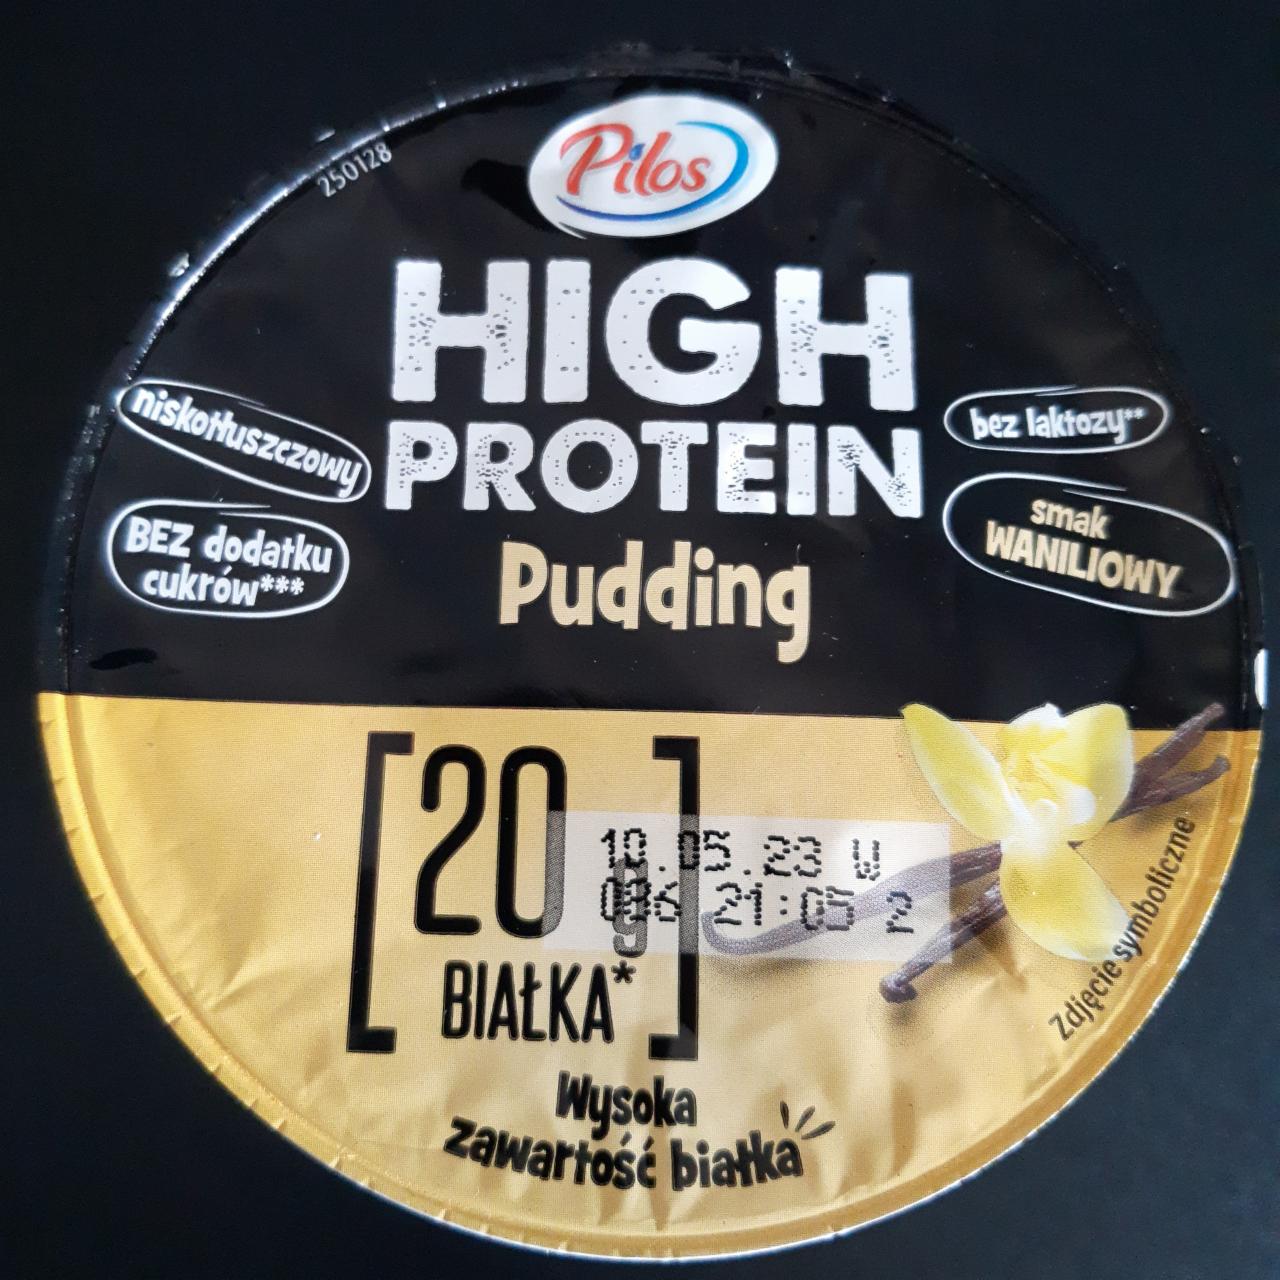 Zdjęcia - High protein pudding smak waniliowy Pilos